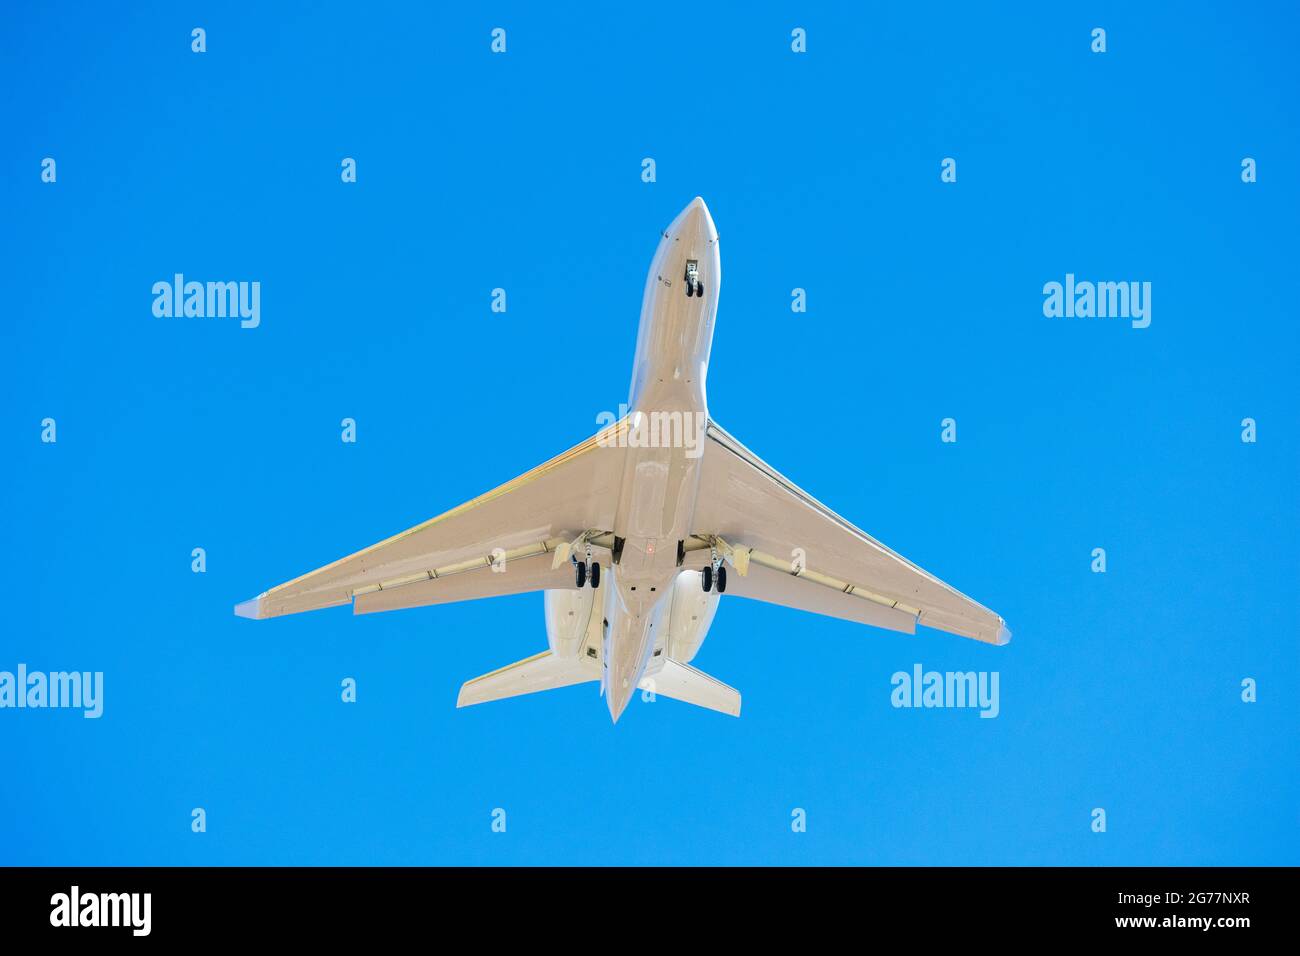 Kleiner Business Jet mit Landescheinwerfer und eingesetztem Fahrwerk zur Vorbereitung auf die Landung am Flughafen. Blauer Himmel Stockfoto